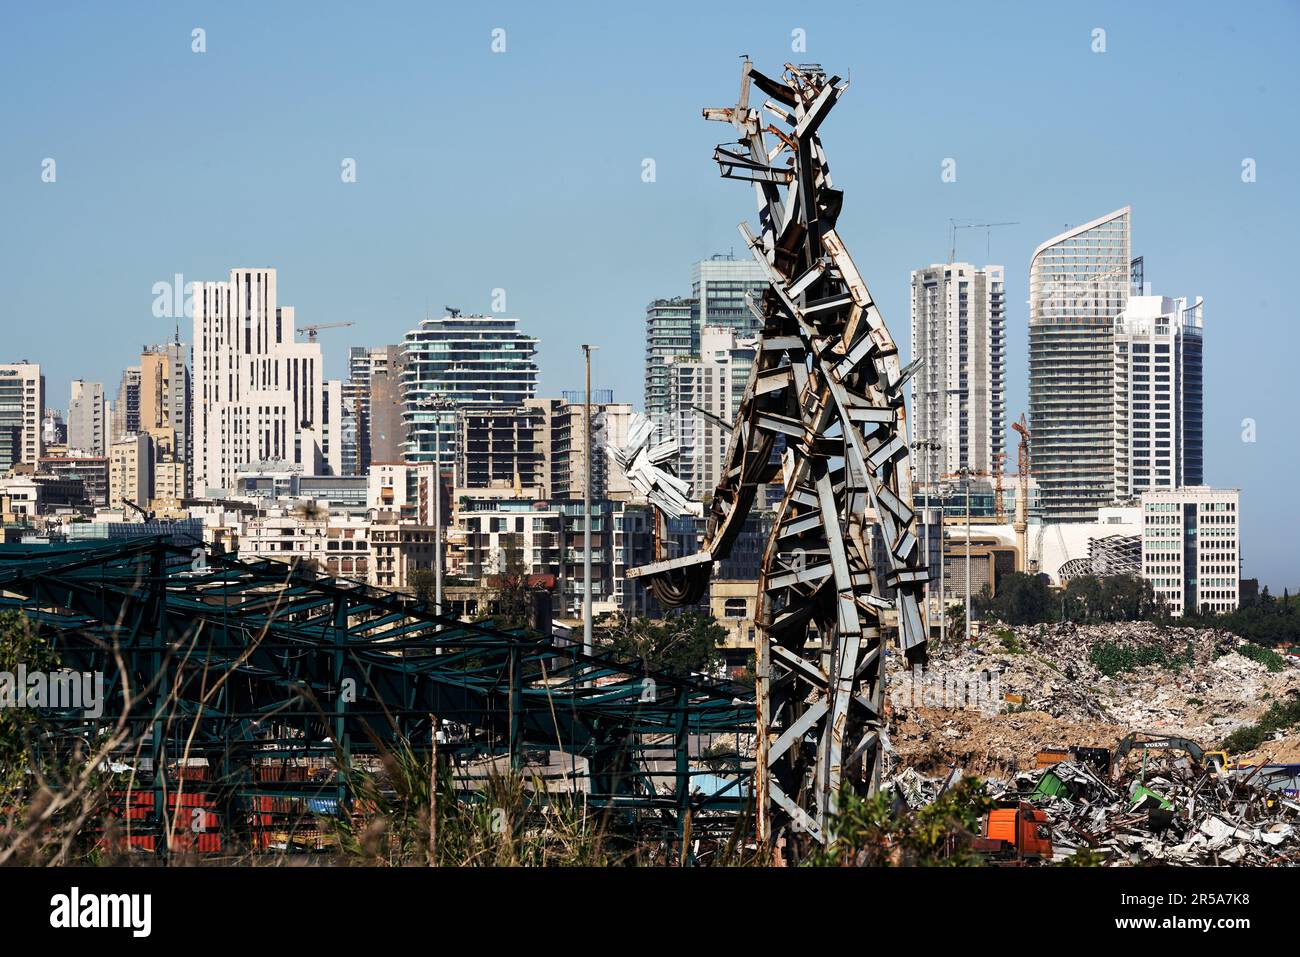 Beirut, Libanon: Hochhäuser der Innenstadt von Beirut hinter einer Stahlskulptur des Künstlers Nadim Karam zum Gedenken an die Opfer der tödlichen explosion vom 4,8.2020, gefertigt aus dem Schrot der gewaltigen explosion von 2,750 Tonben Ammoniumnitrat, die im Hafen gelagert waren Foto Stock